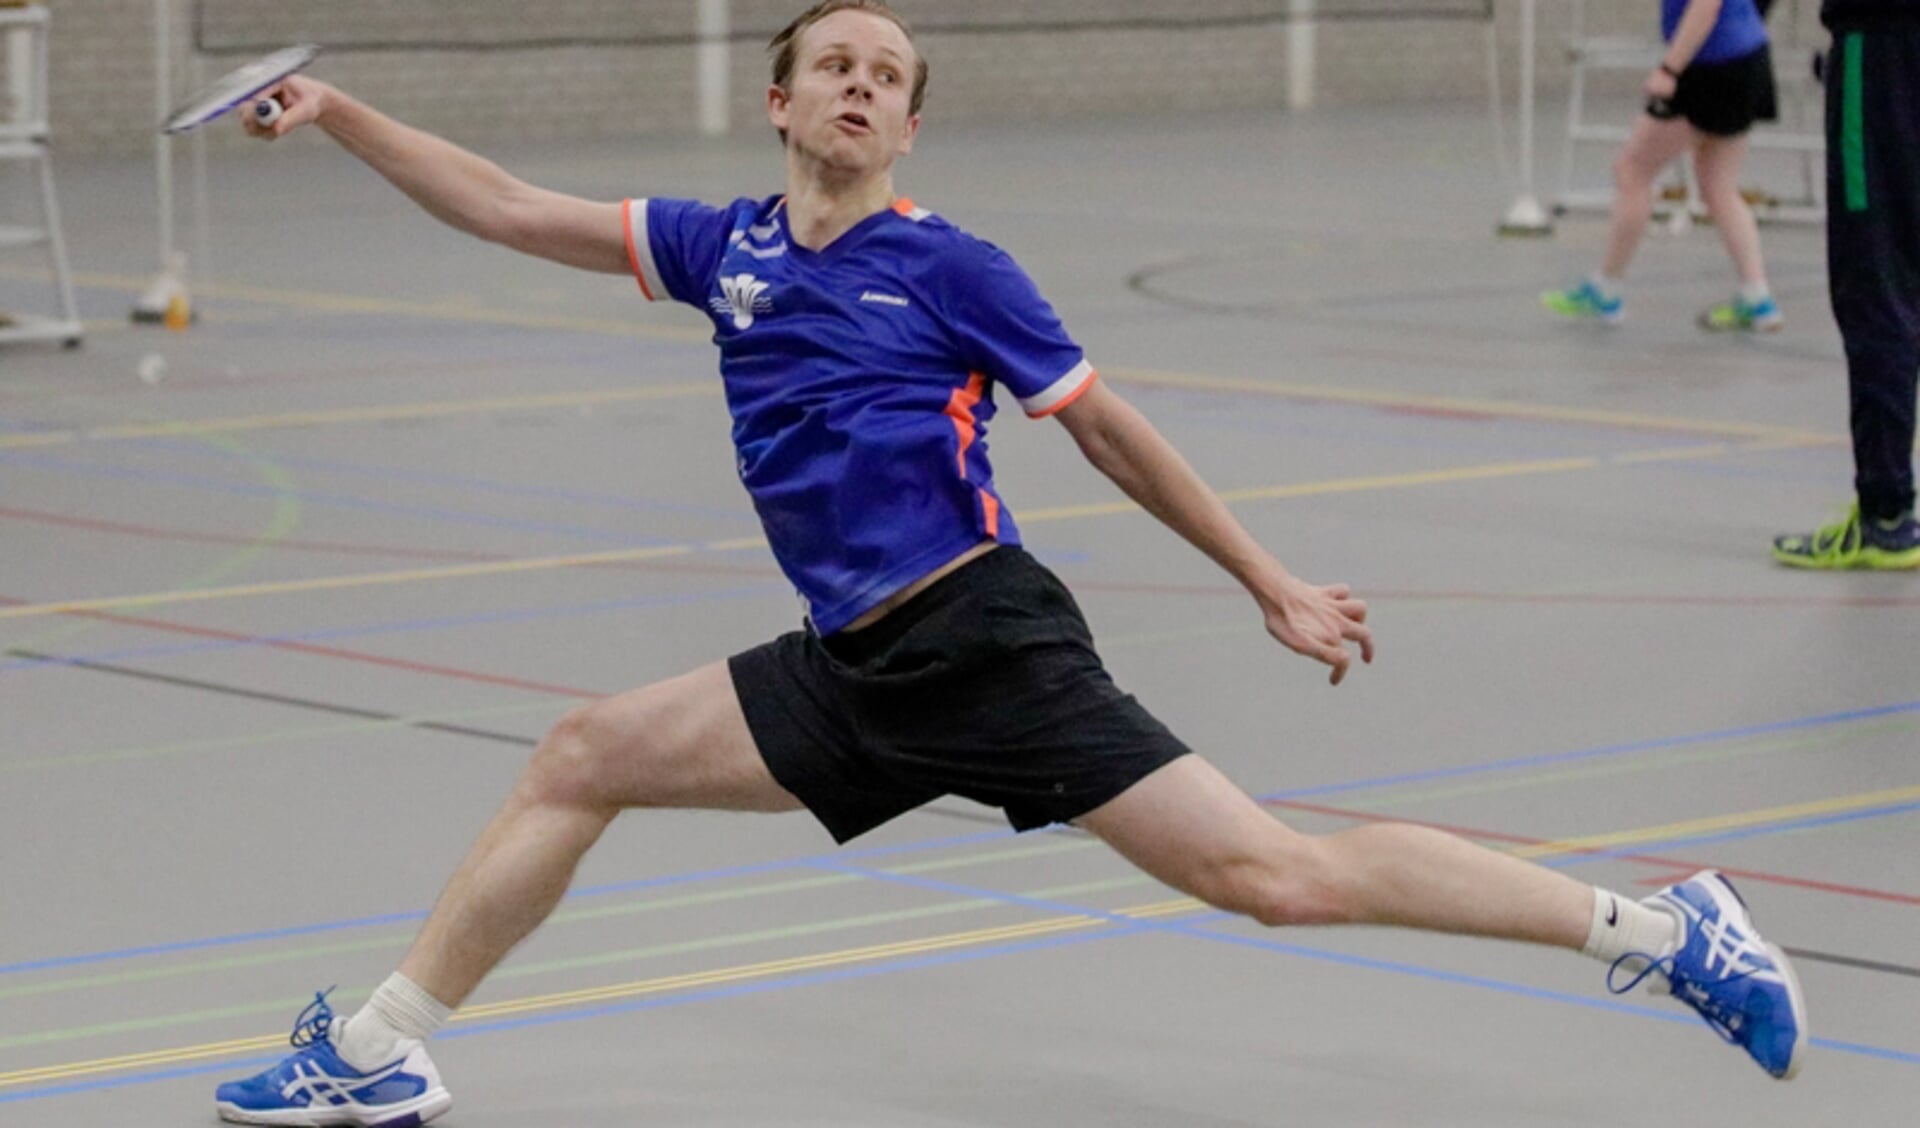 Stefan Broeren: “Ik probeer sober te spelen.” (foto: Sportshoots.nl, tekst: Erik van Leeuwen)